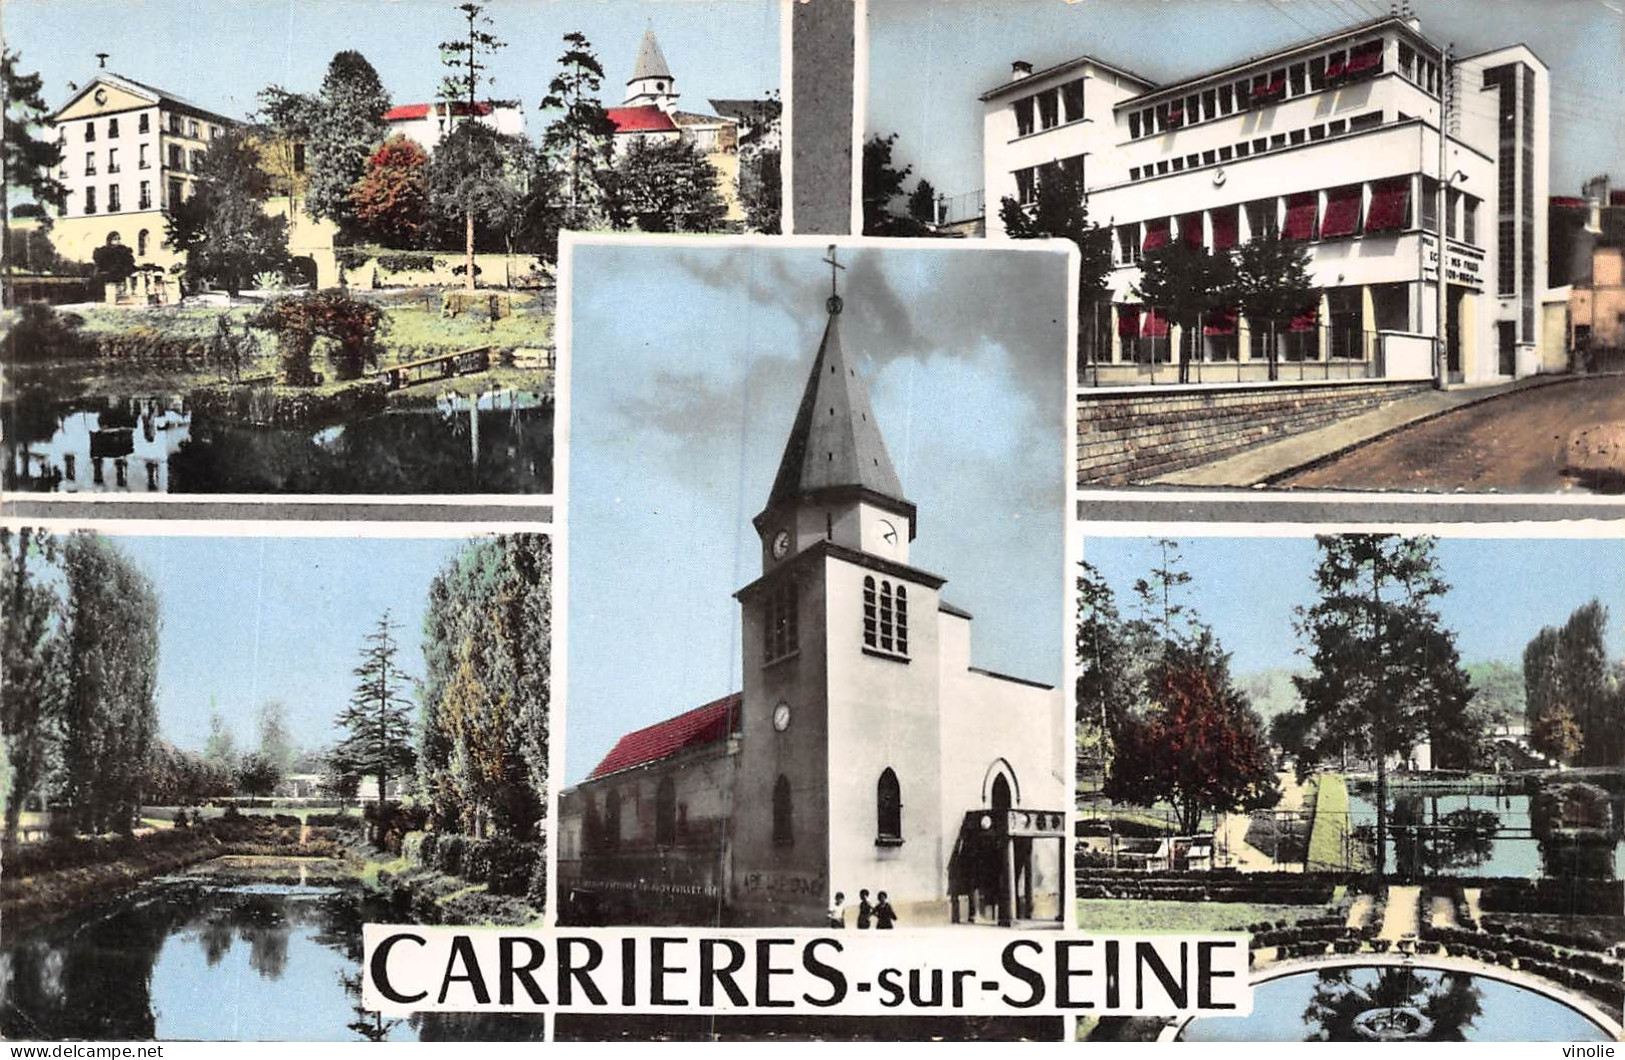 JK-23-3273 : CARRIERES-SUR-SEINE - Carrières-sur-Seine